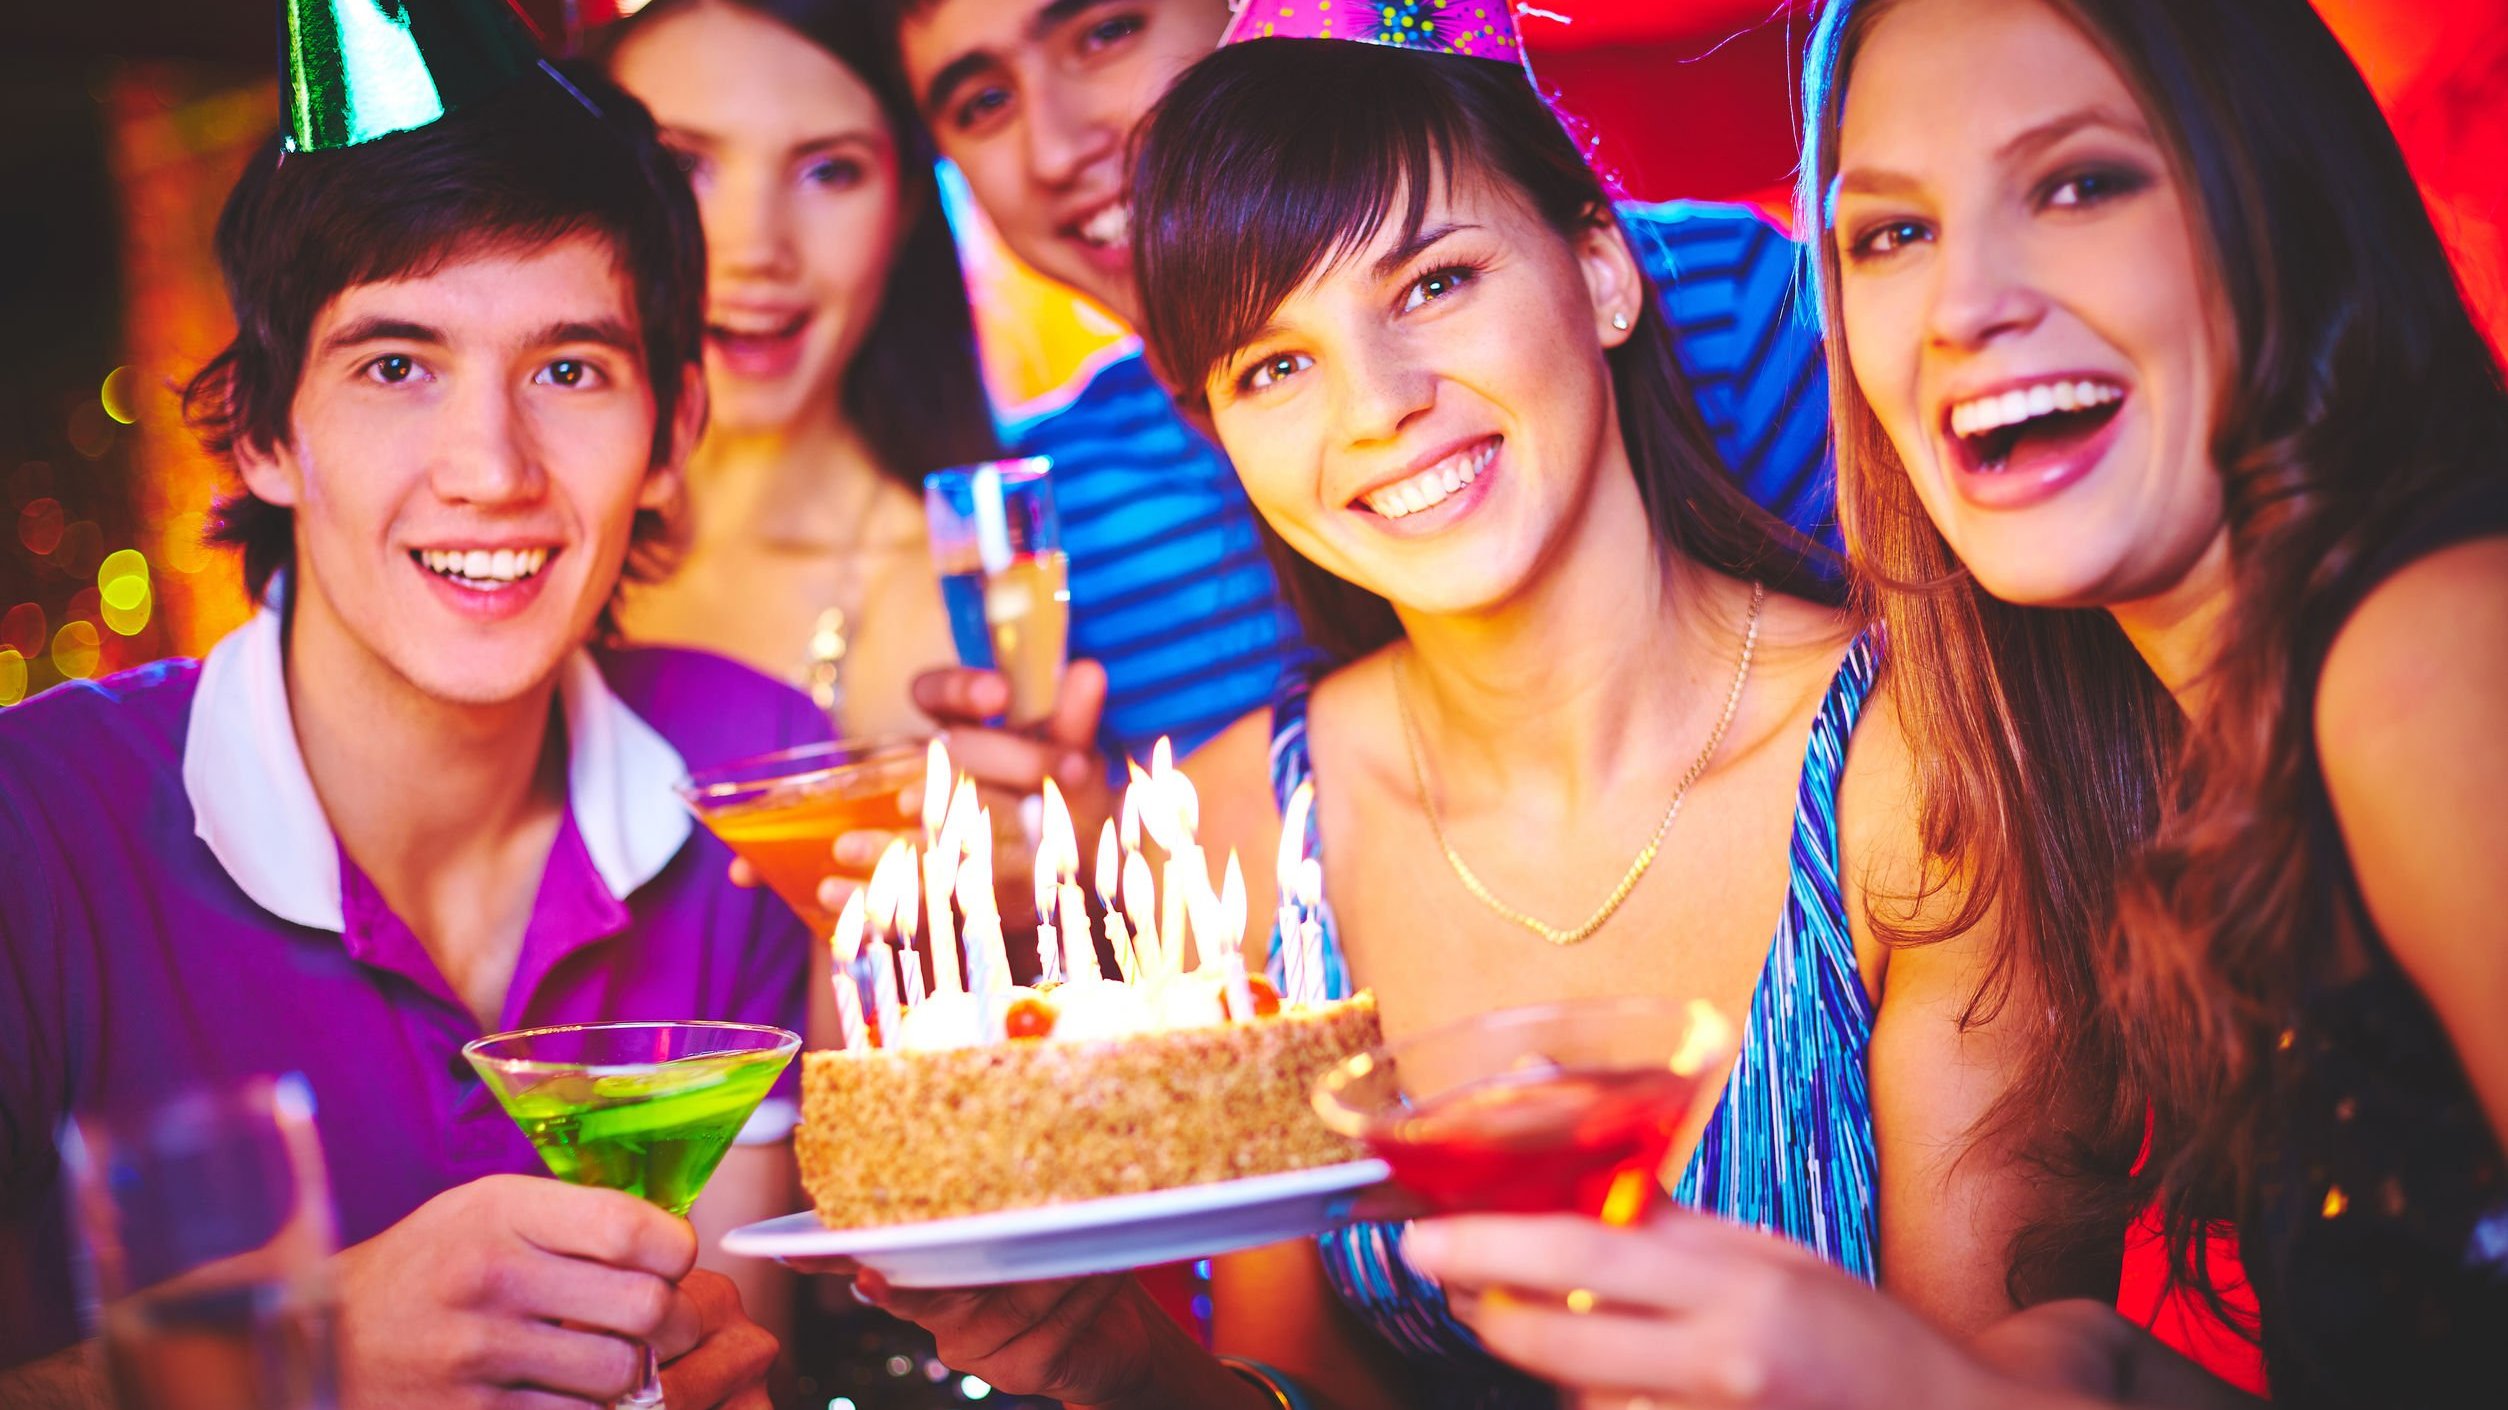 Pessoas comemorando aniversário ao redor de um bolo com velas acesas, todos sorrindo e usando chapéus de aniversário